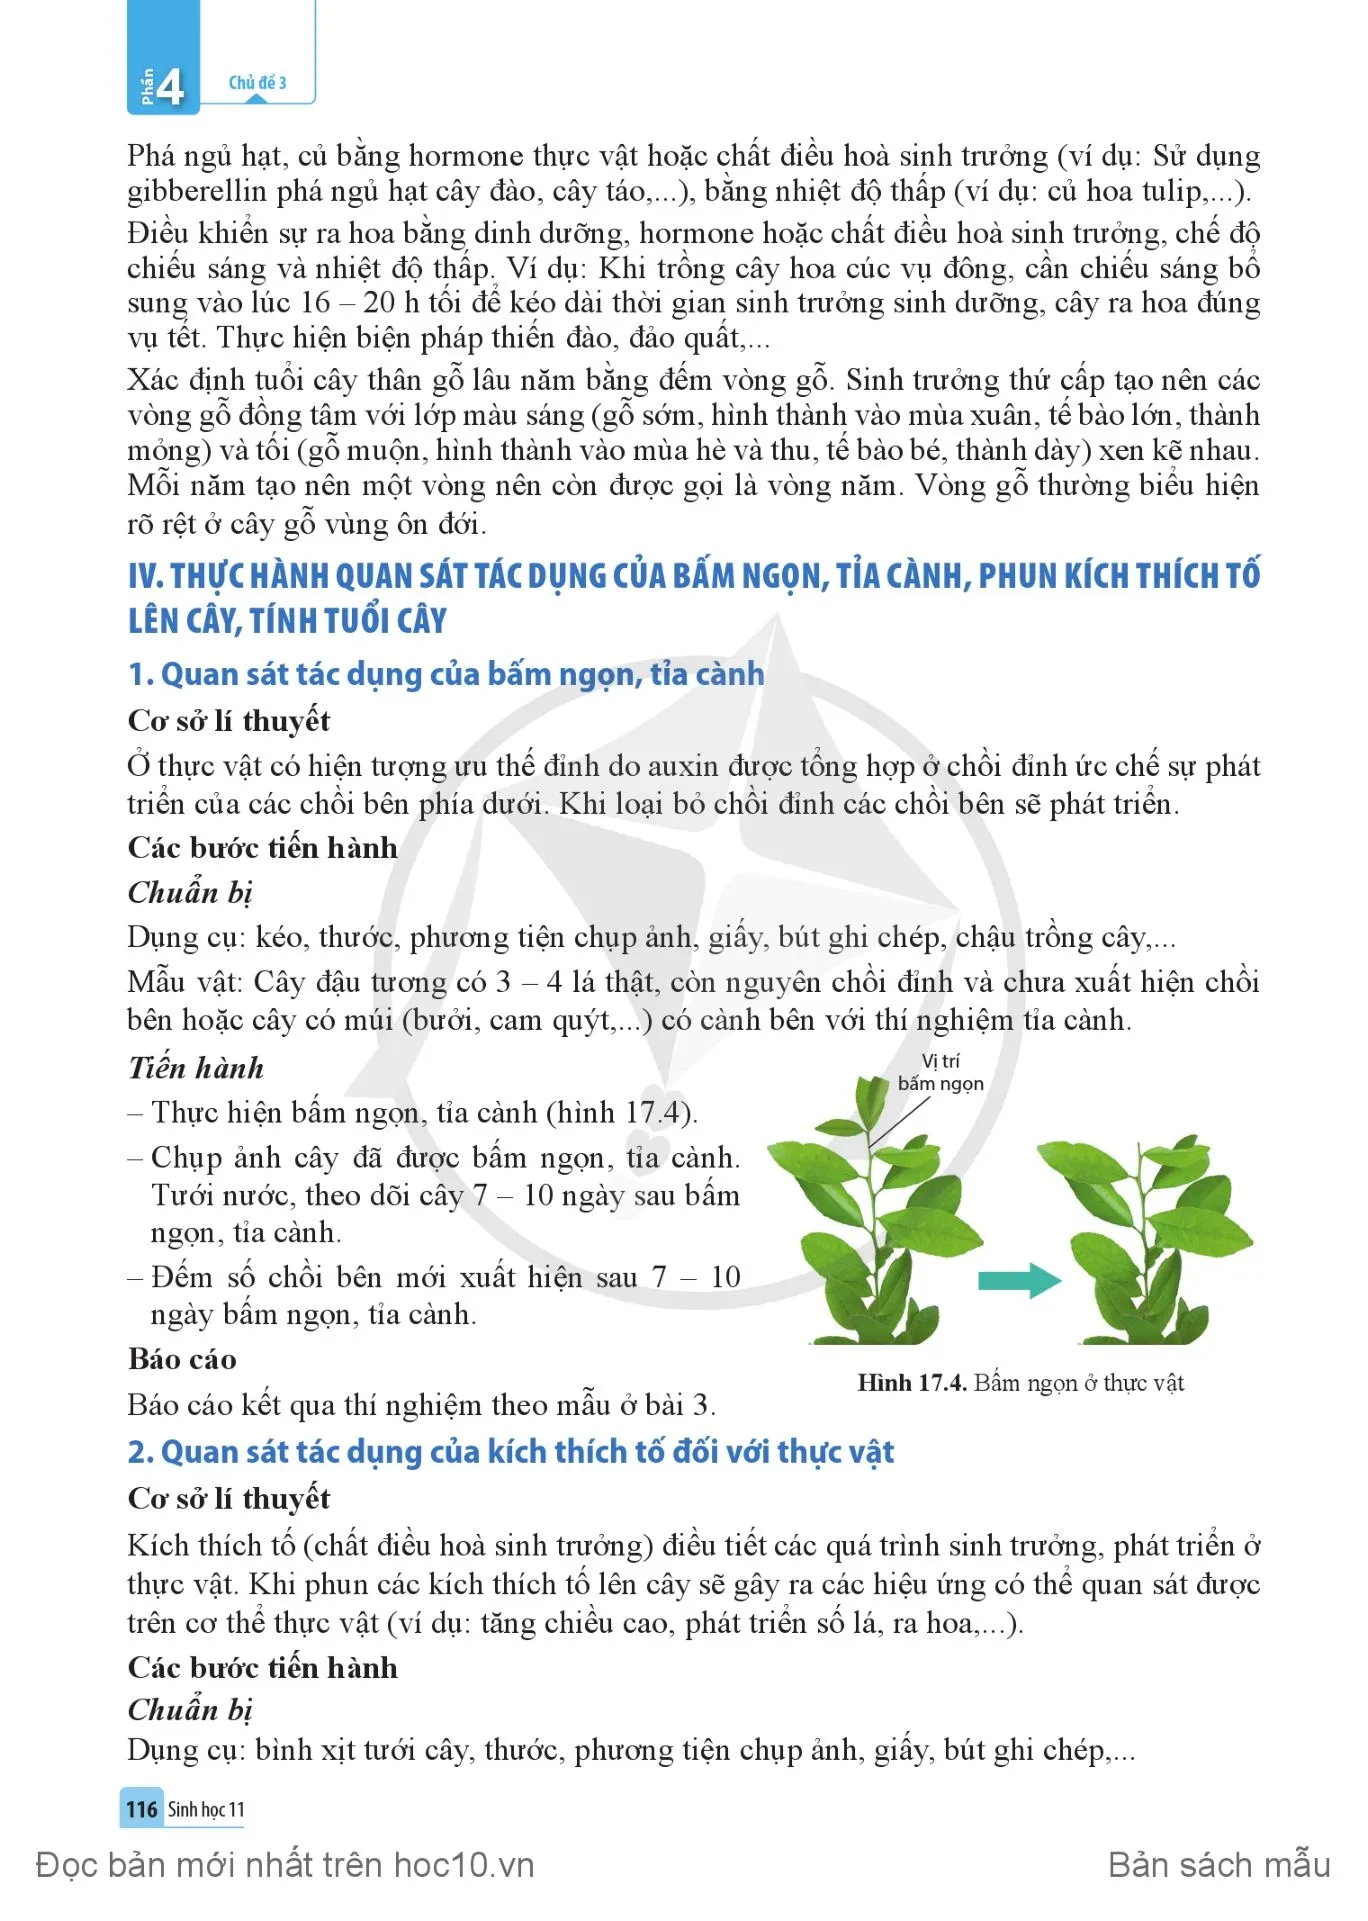 Bài 17. Các nhân tố ảnh hưởng đến sinh trưởng và phát triển ở thực vật